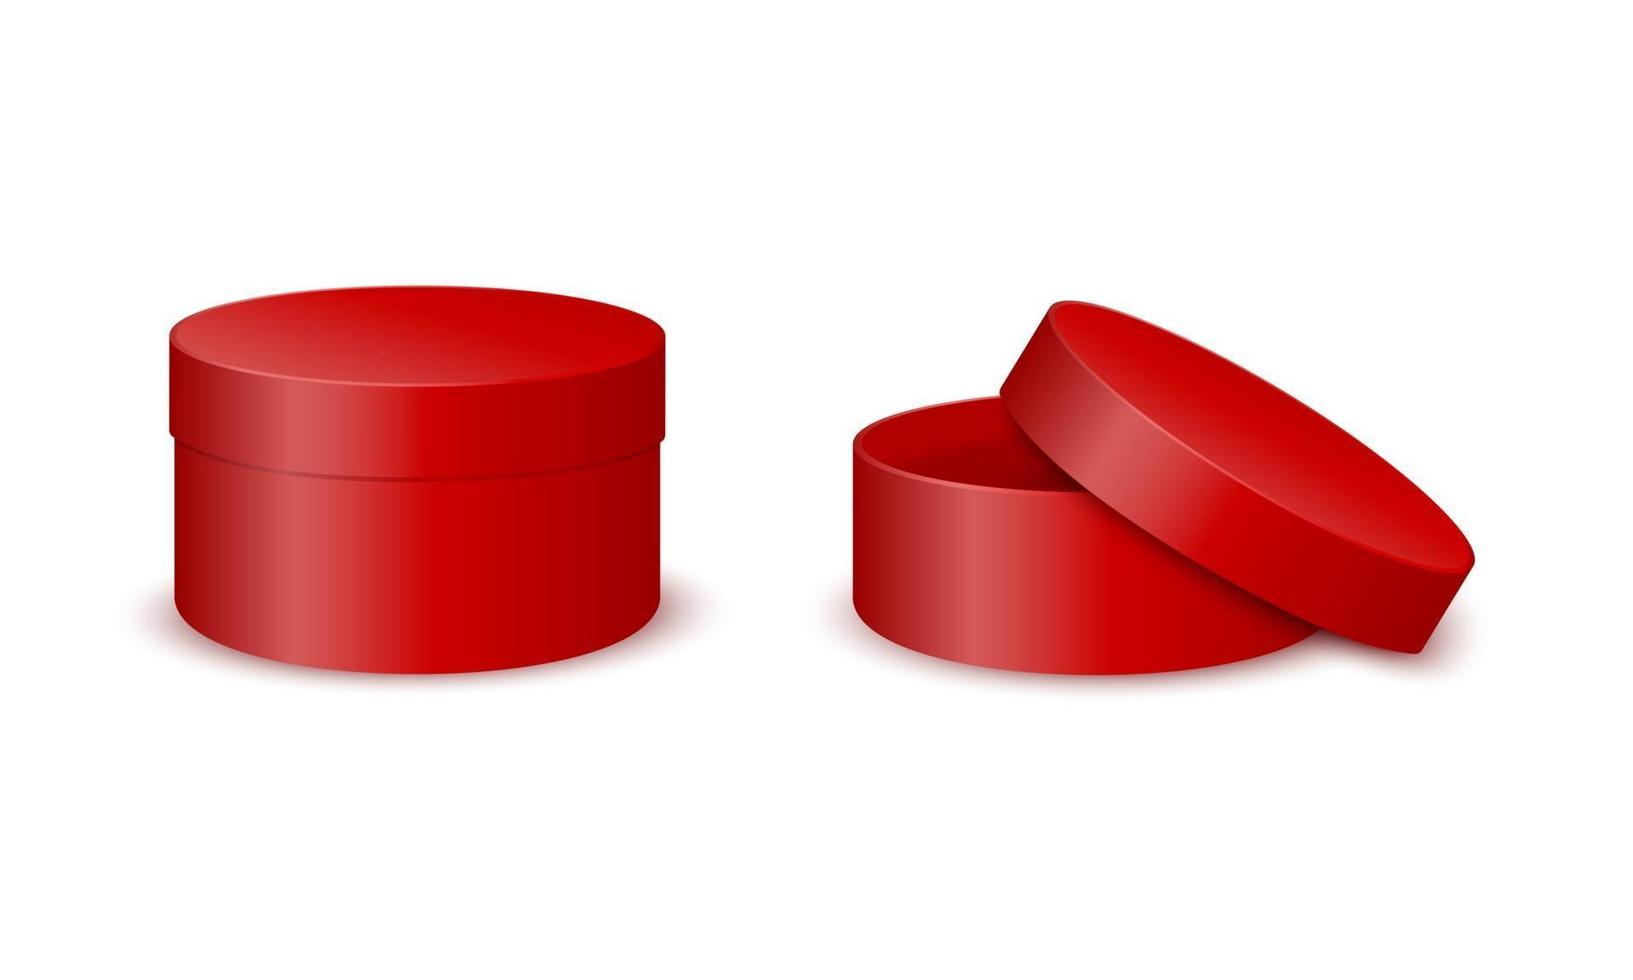 maquete de caixas de papelão redondas vermelhas. pacotes de cilindros fechados e abertos vetor